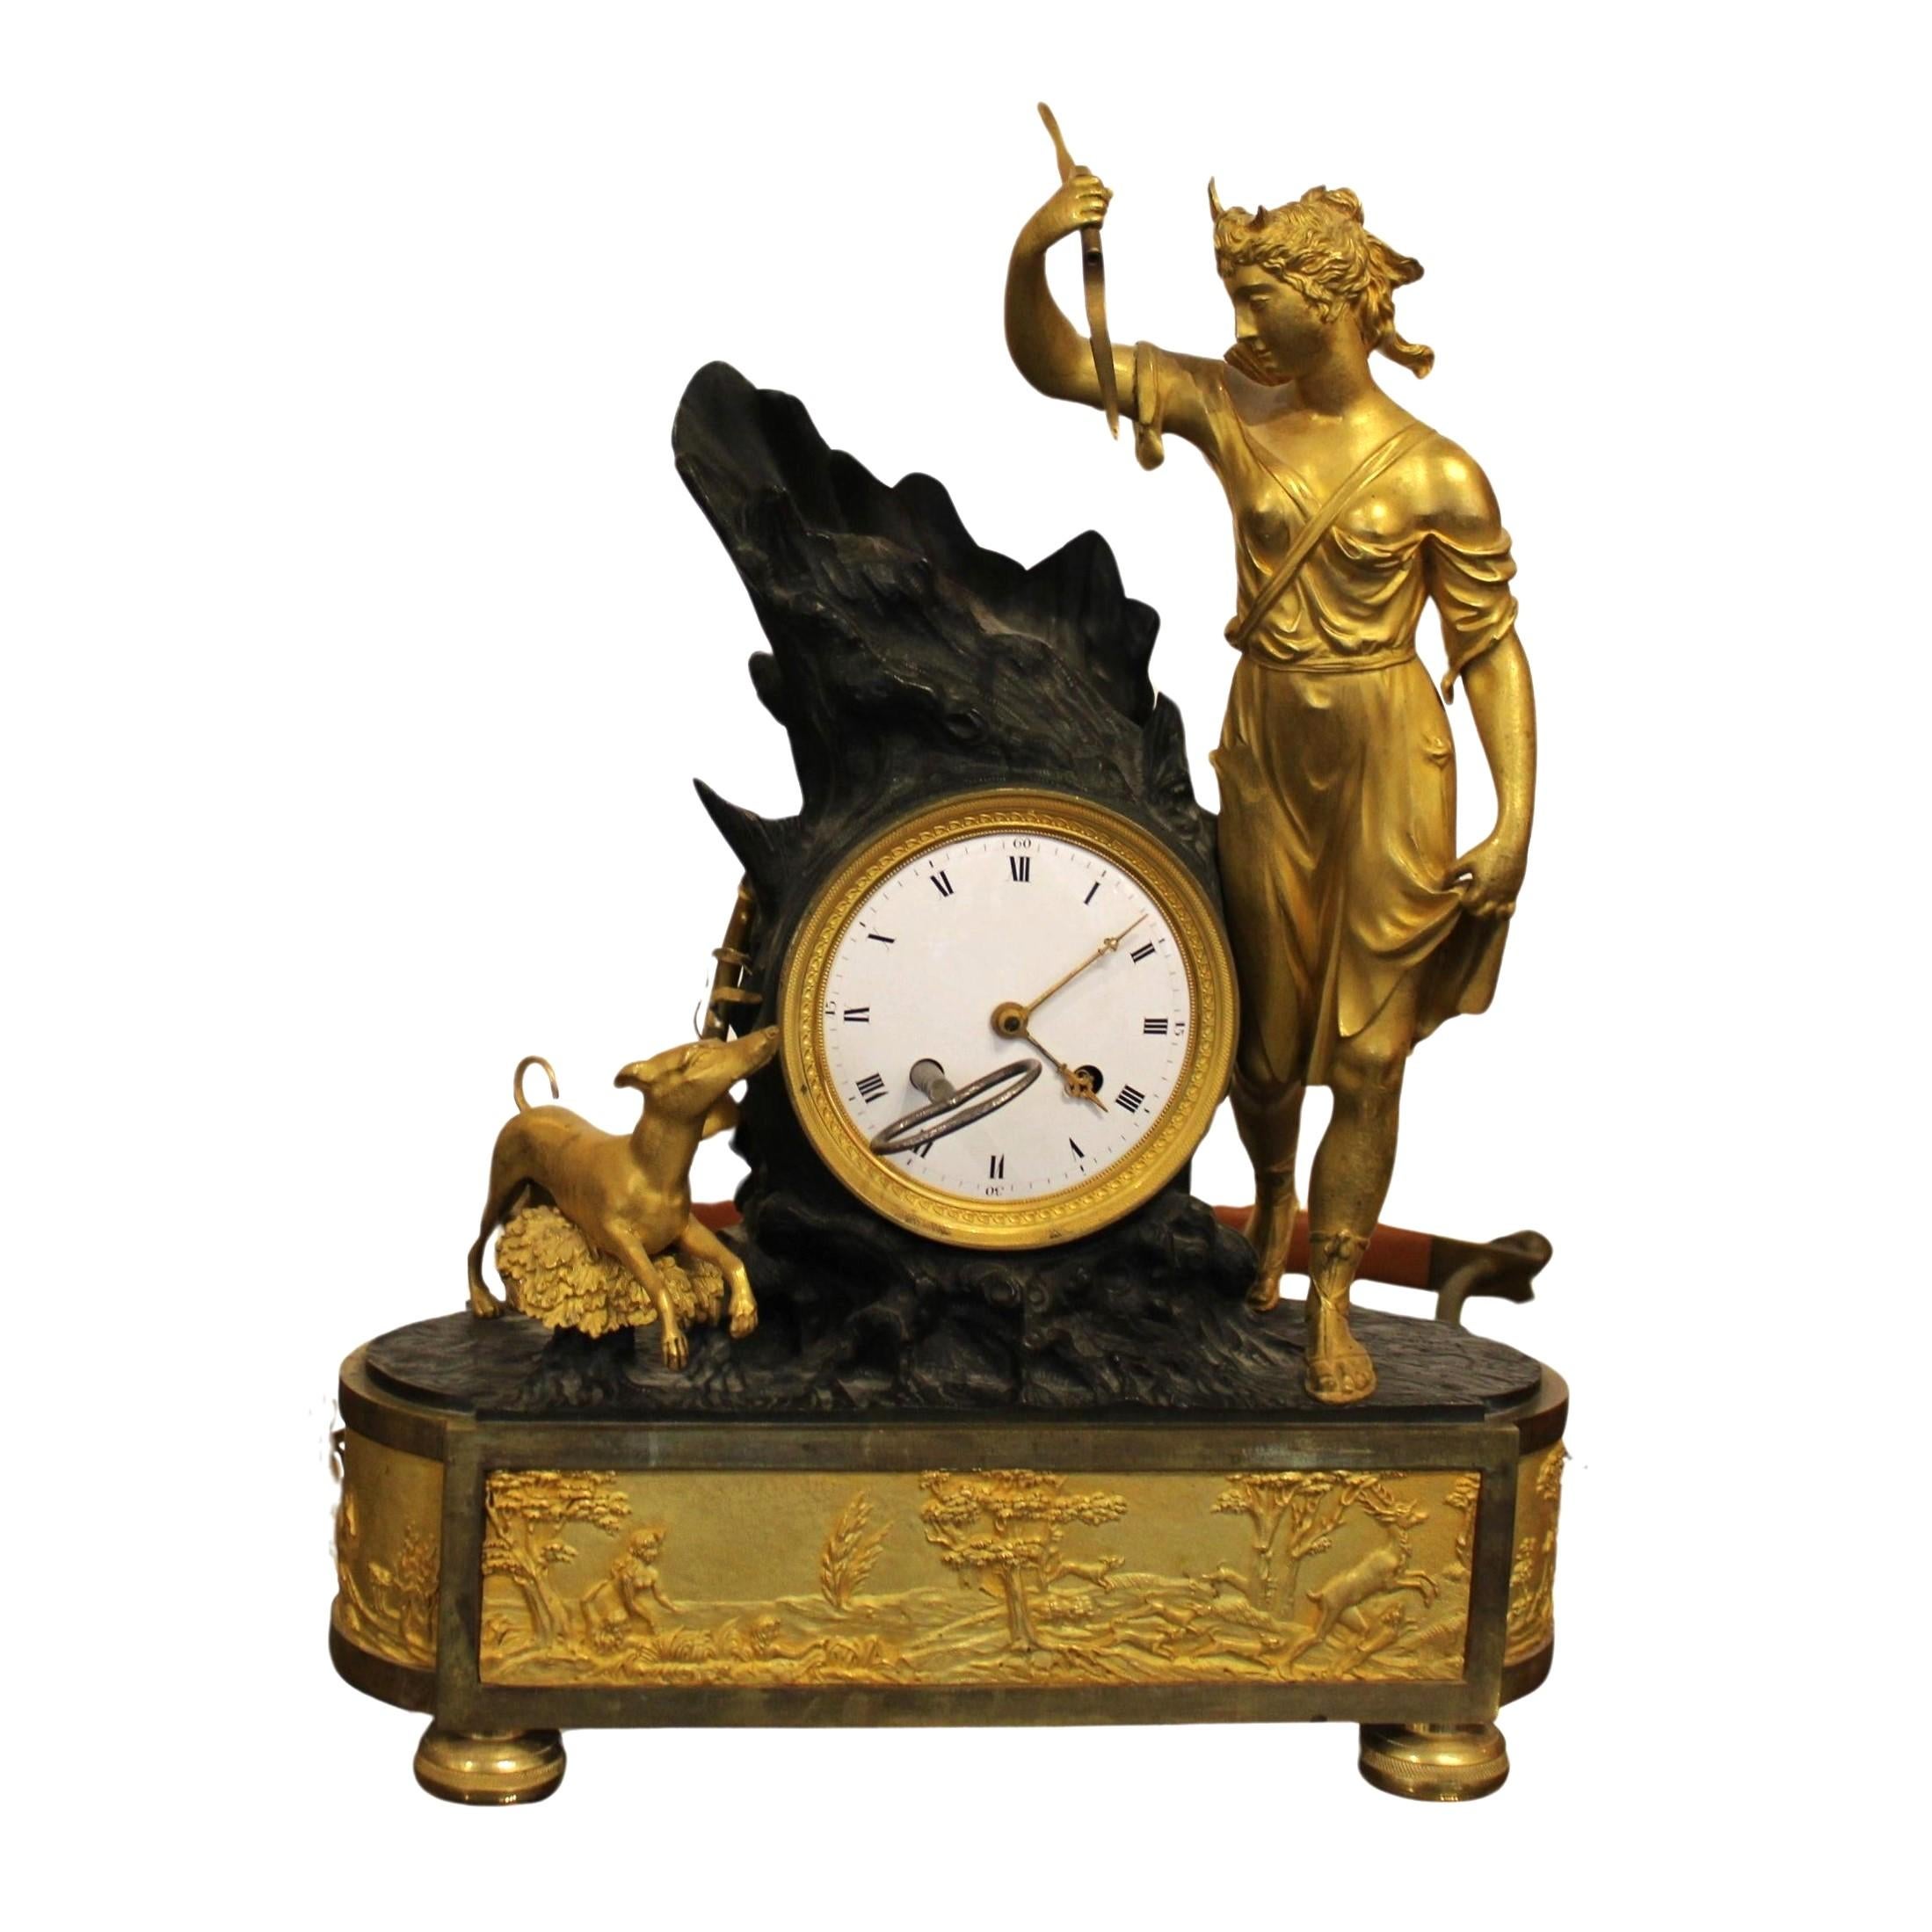 Vergoldete Bronzeuhr, die Diana die Jägerin darstellt
Frankreich, Anfang 19. Jahrhundert